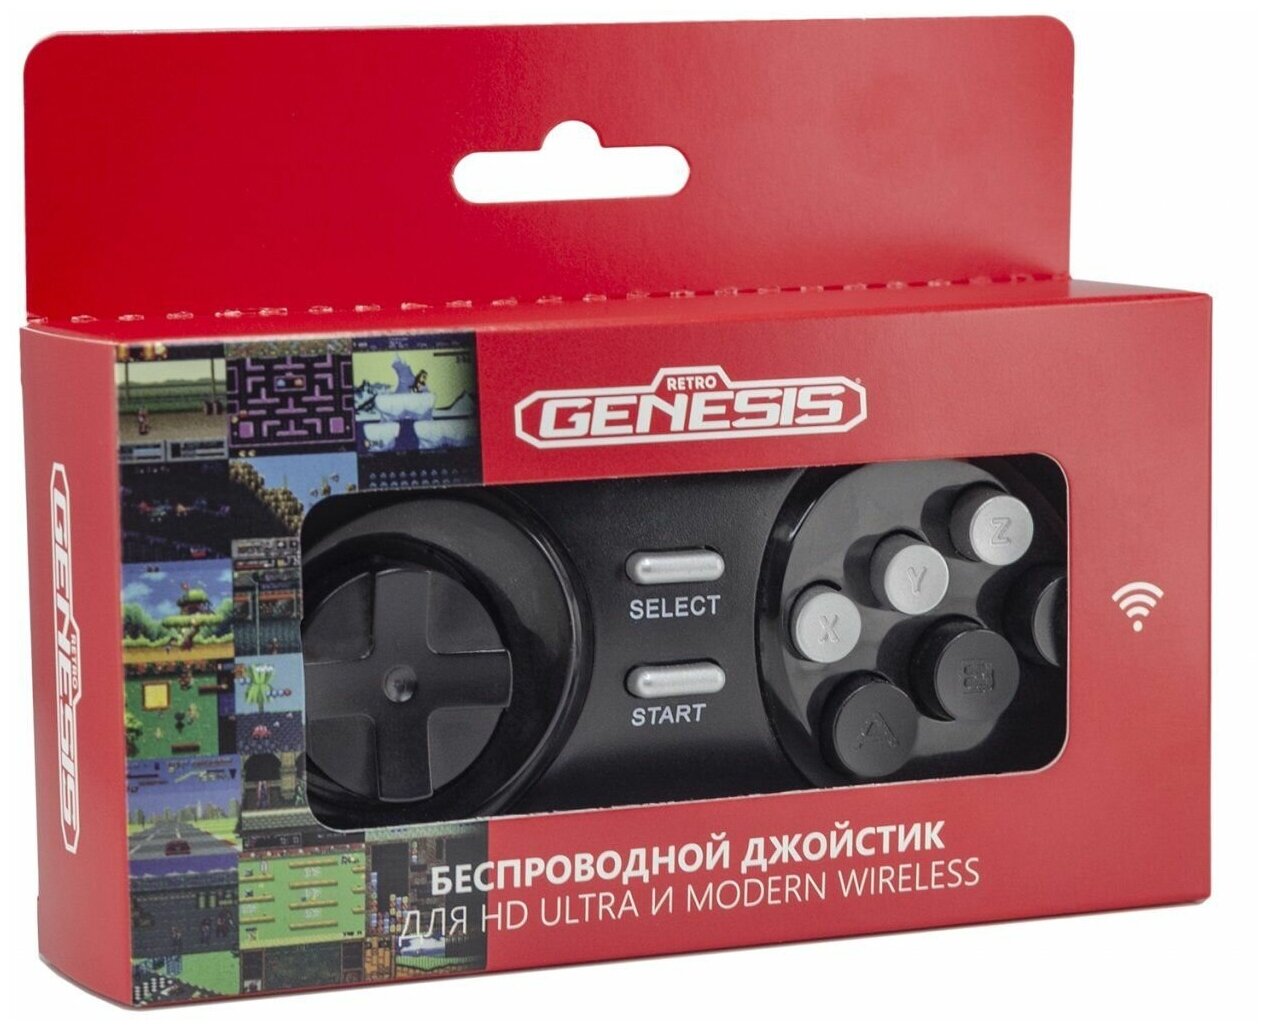 Аксессуар для игровой приставки - джойстик Retro Genesis "Controller 16 Bit" ACSg09, беспроводной, для HD Ultra/P1